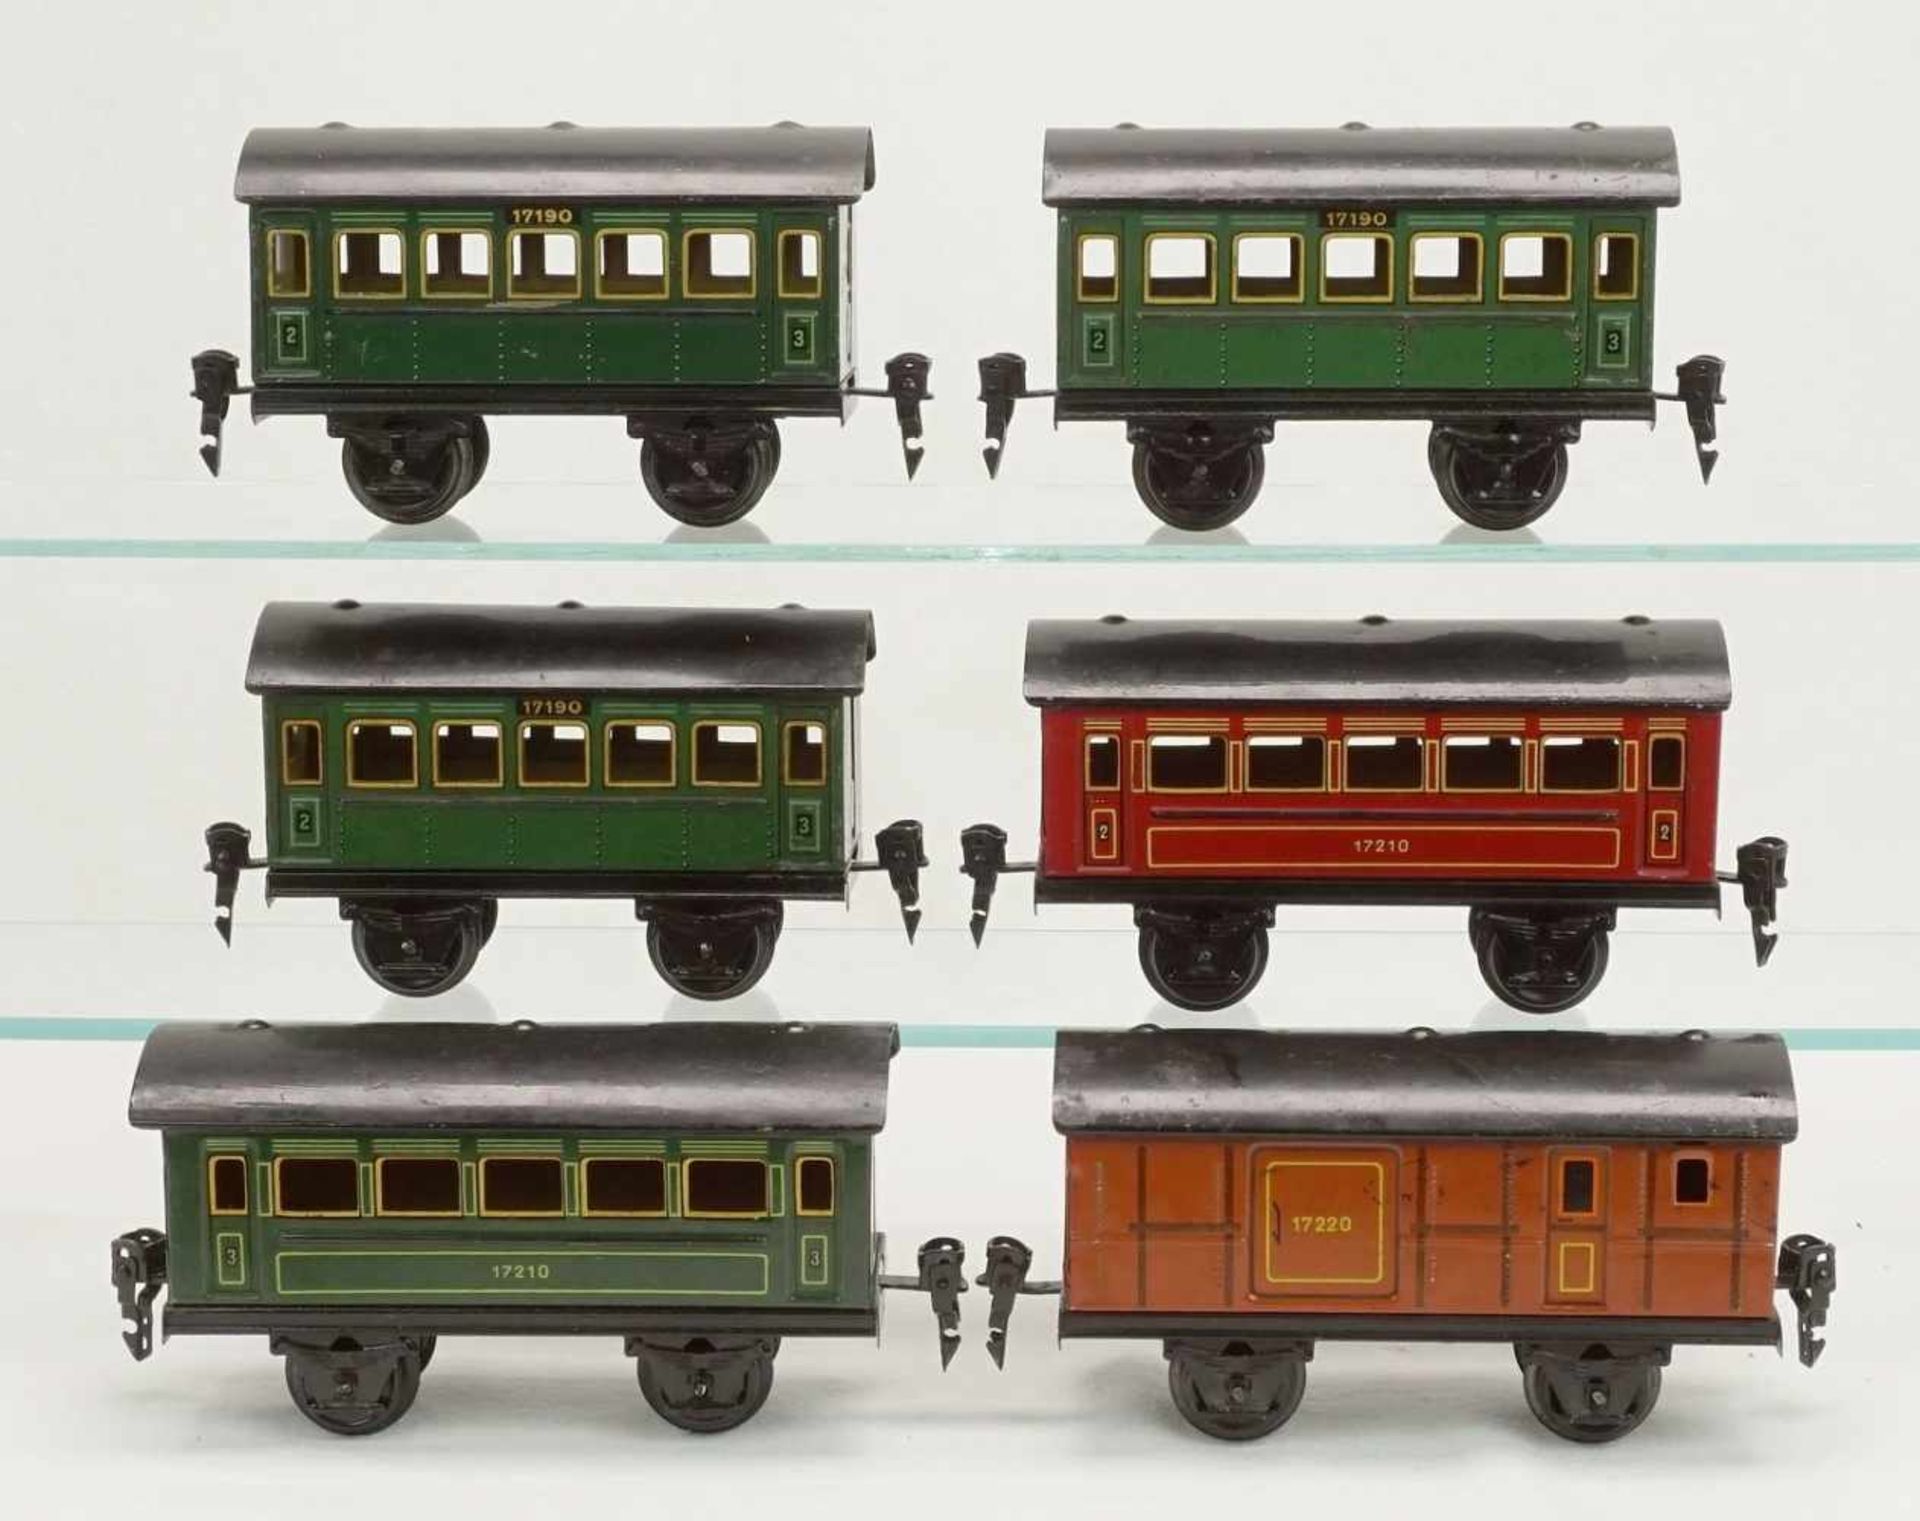 Fünf Märklin Personenwagen und ein Gepäckwagen, Spur 0, um 1930Blech lithografiert, drei grüne